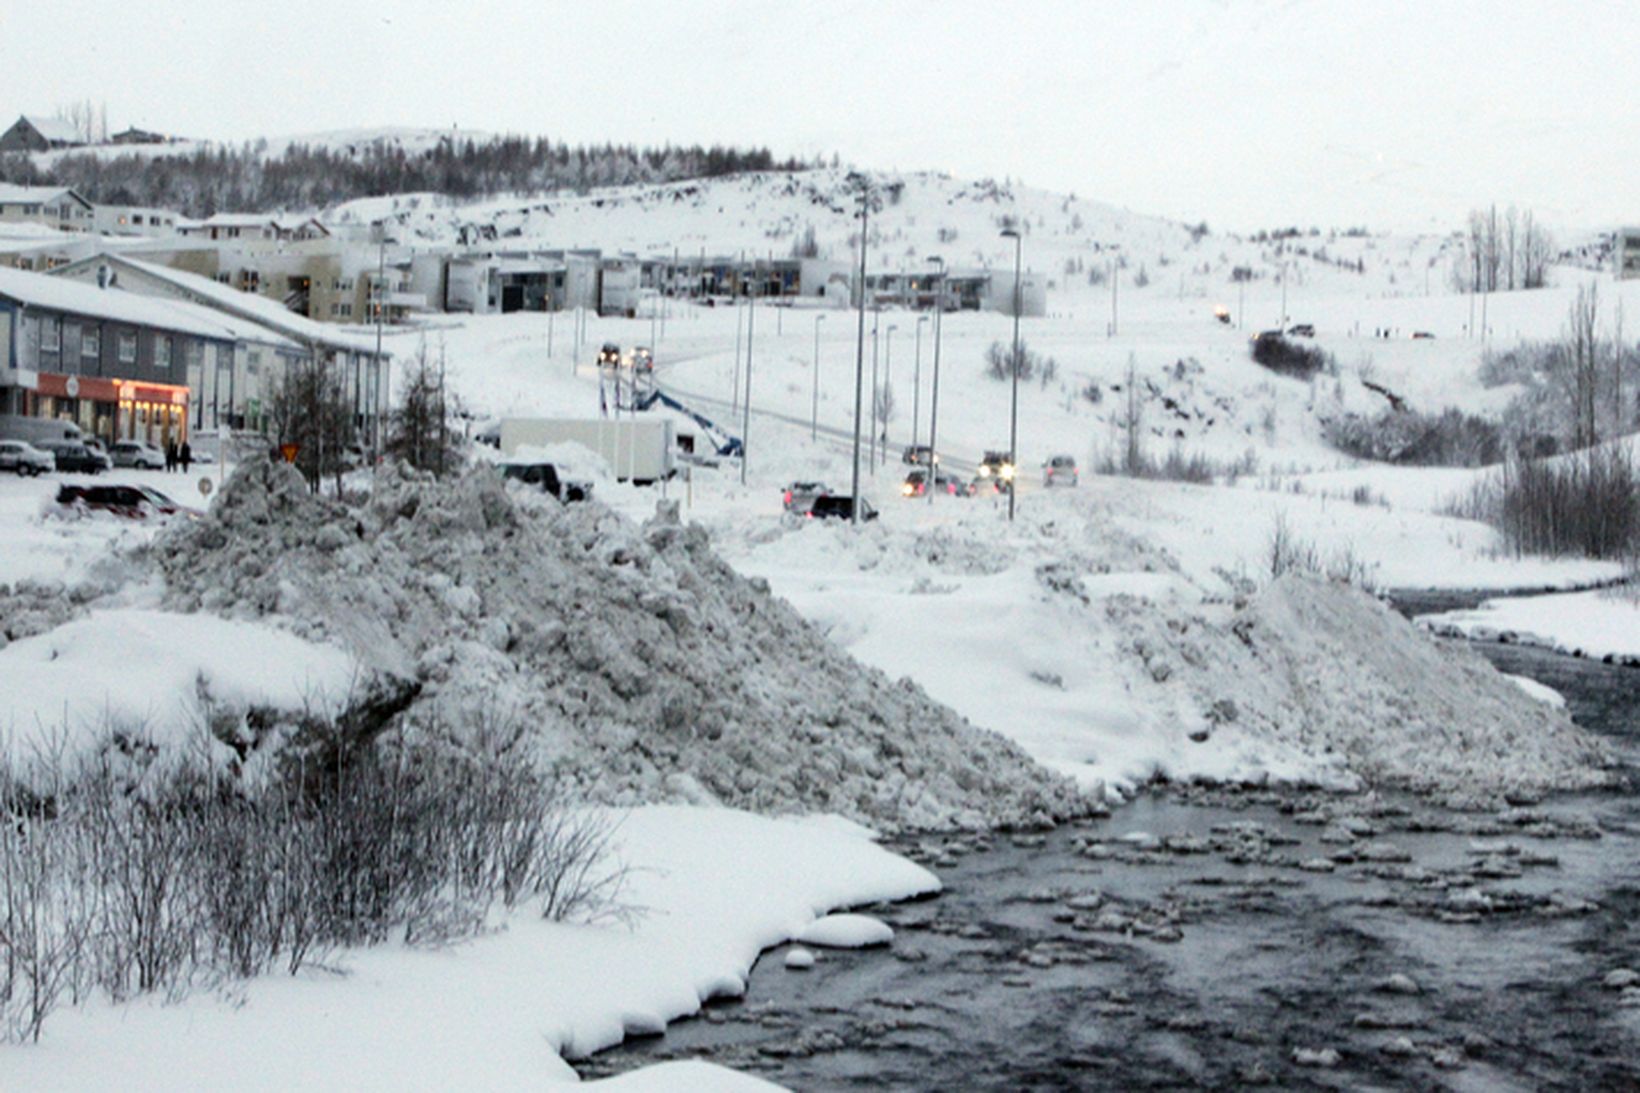 Snjór á Akureyri